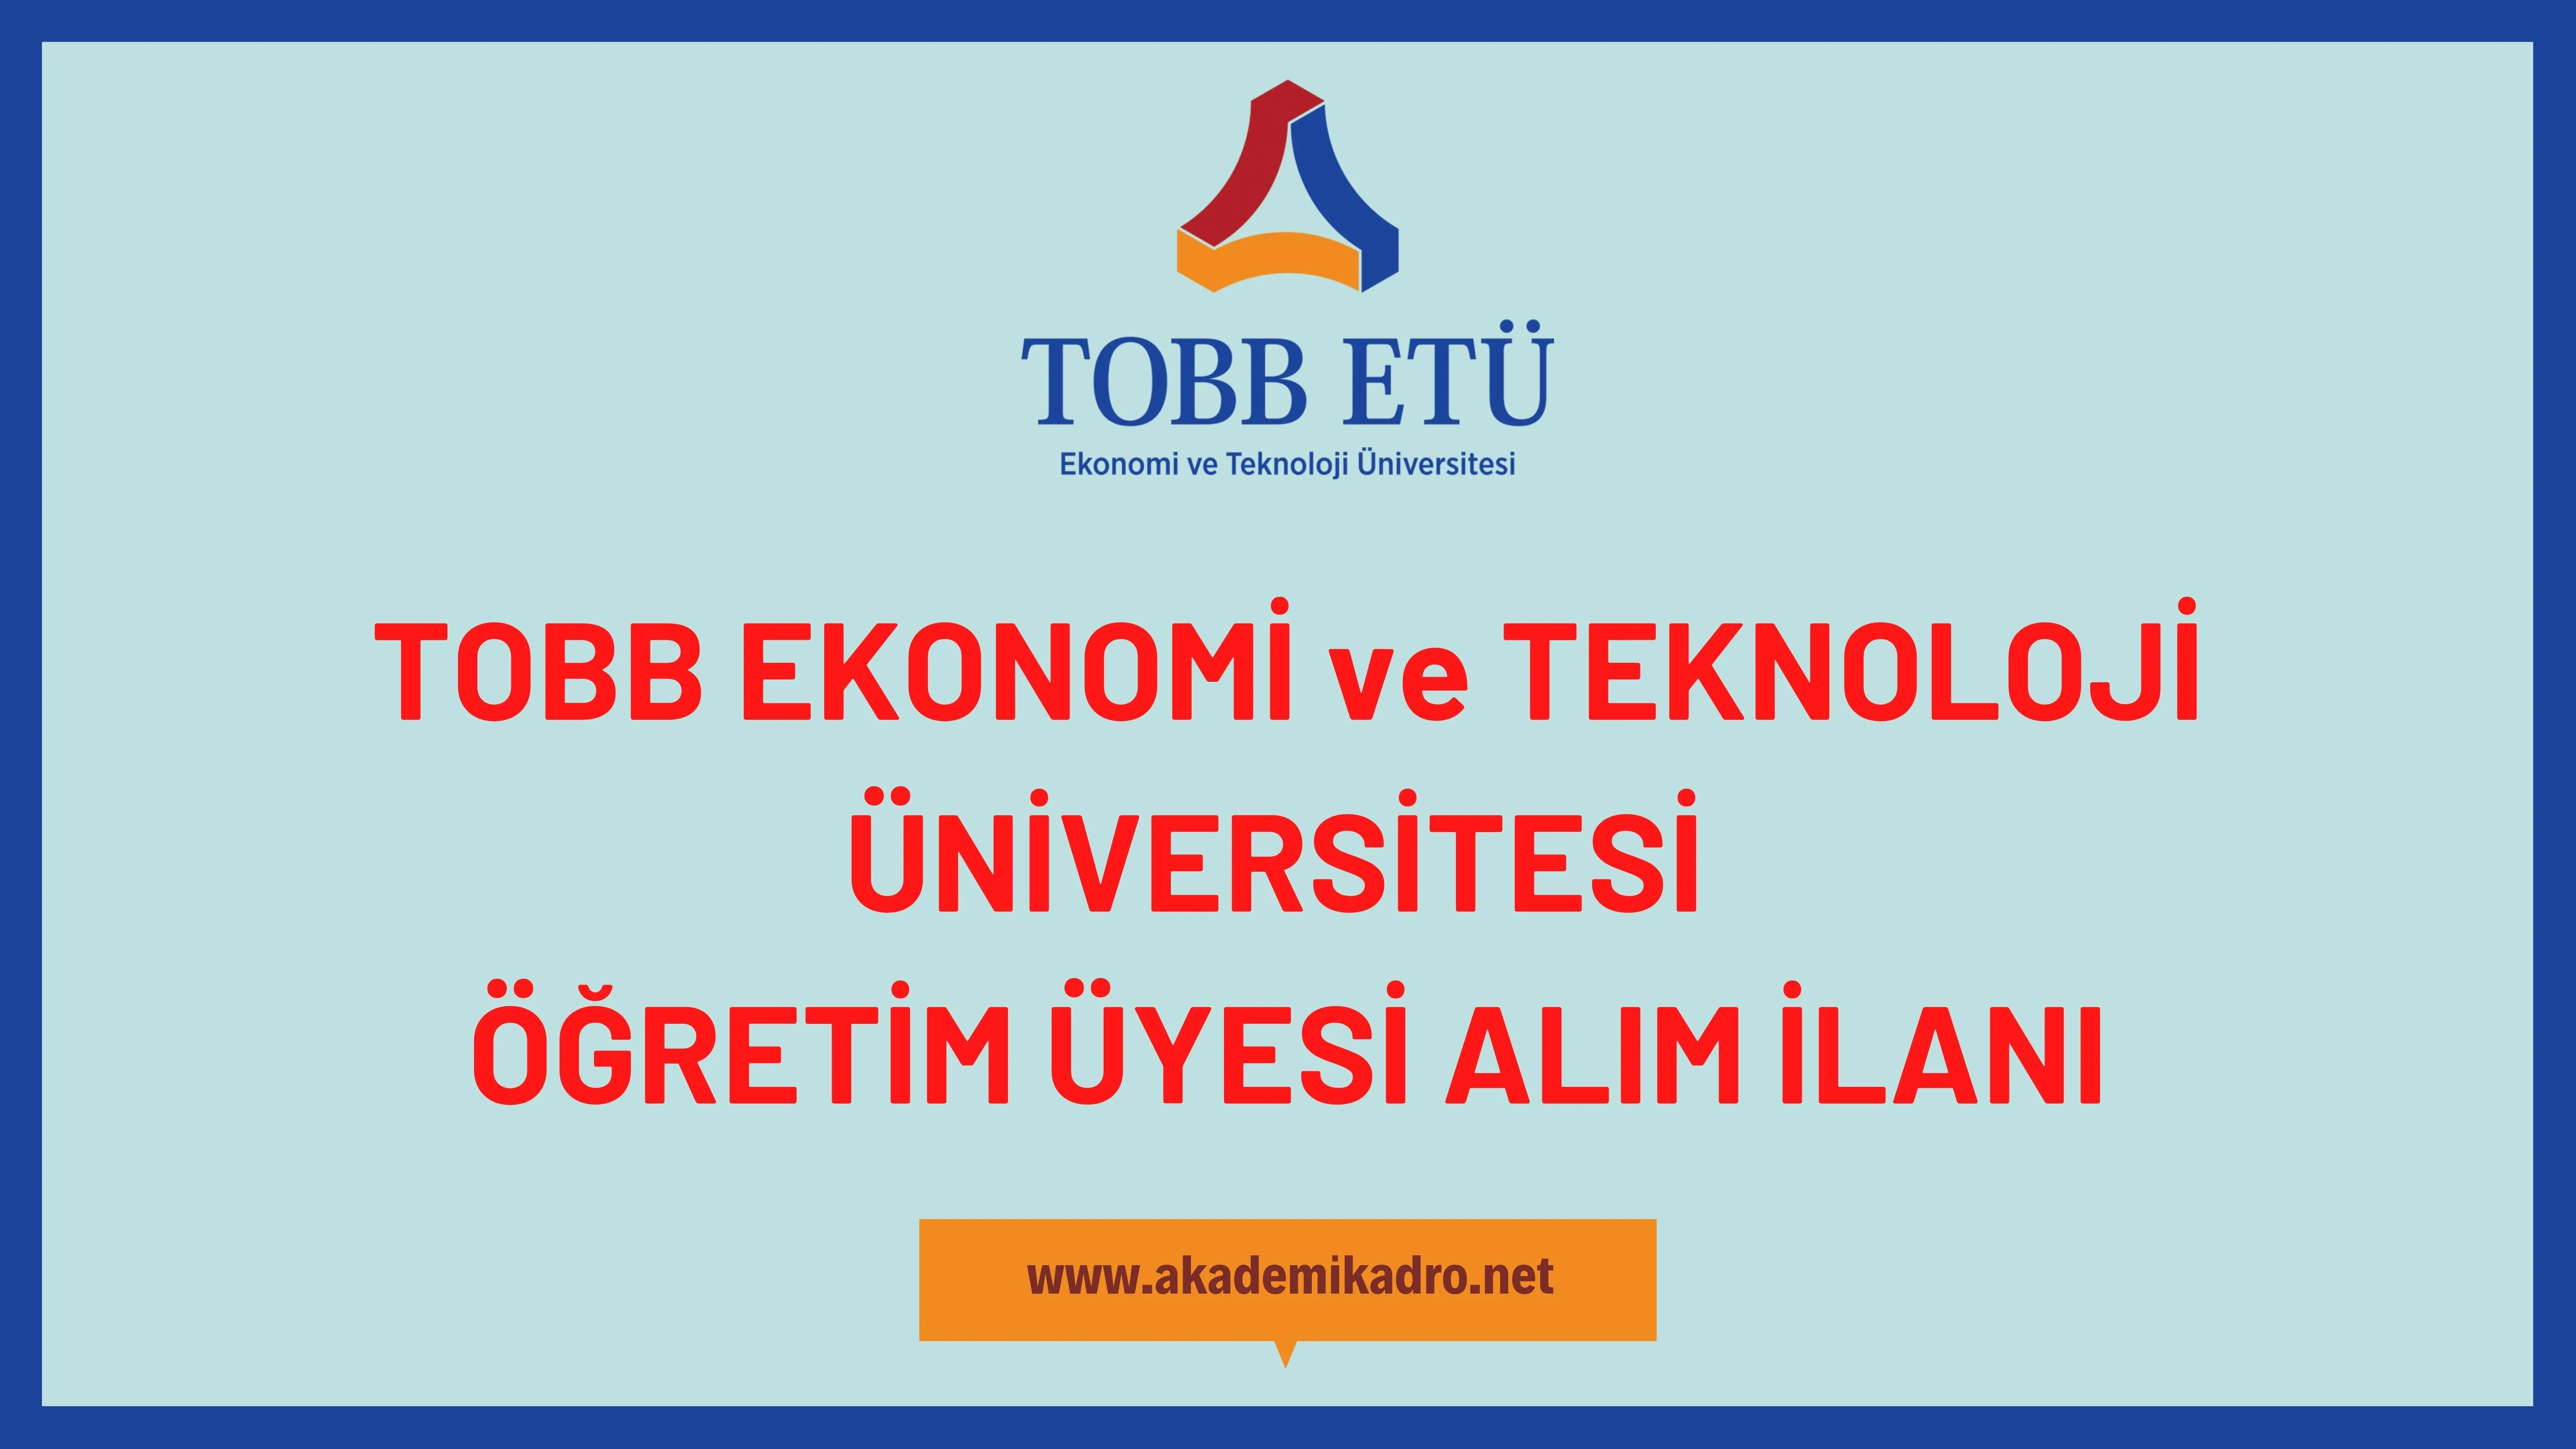 TOBB Ekonomi ve Teknoloji Üniversitesi çeşitli branşlarda 14 öğretim üyesi alacak.